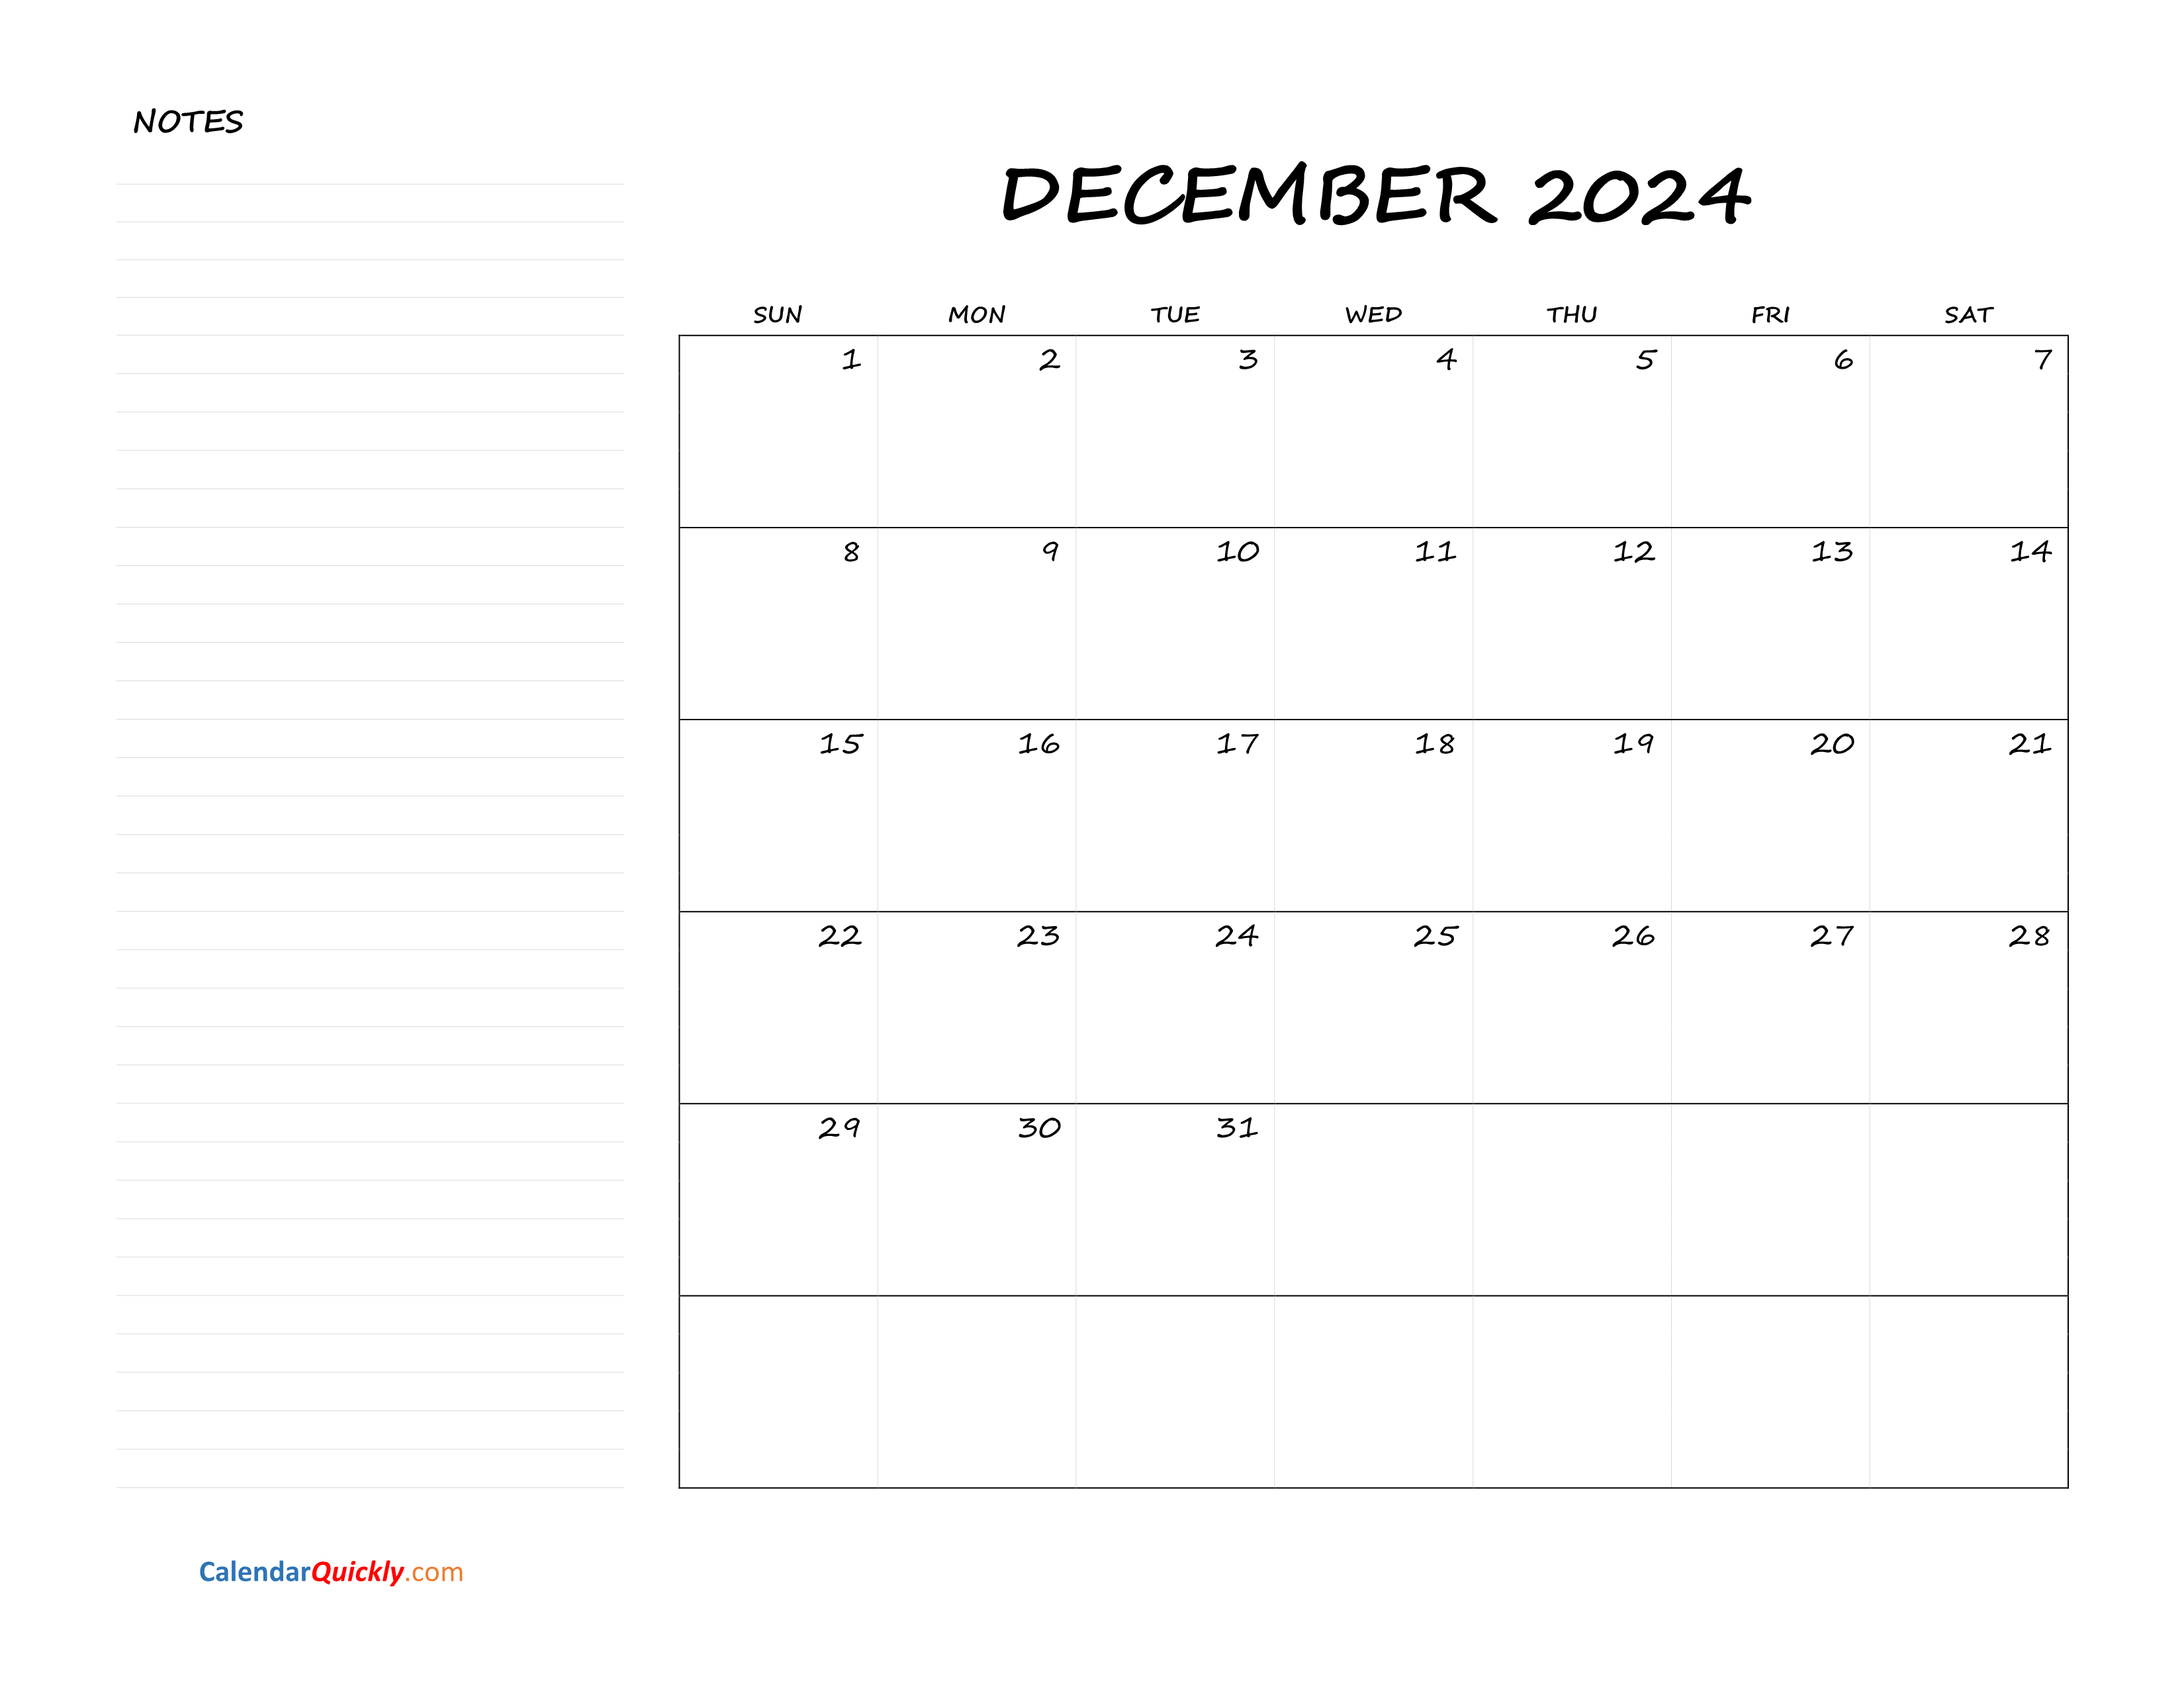 December Blank Calendar 2024 with Notes Calendar Quickly